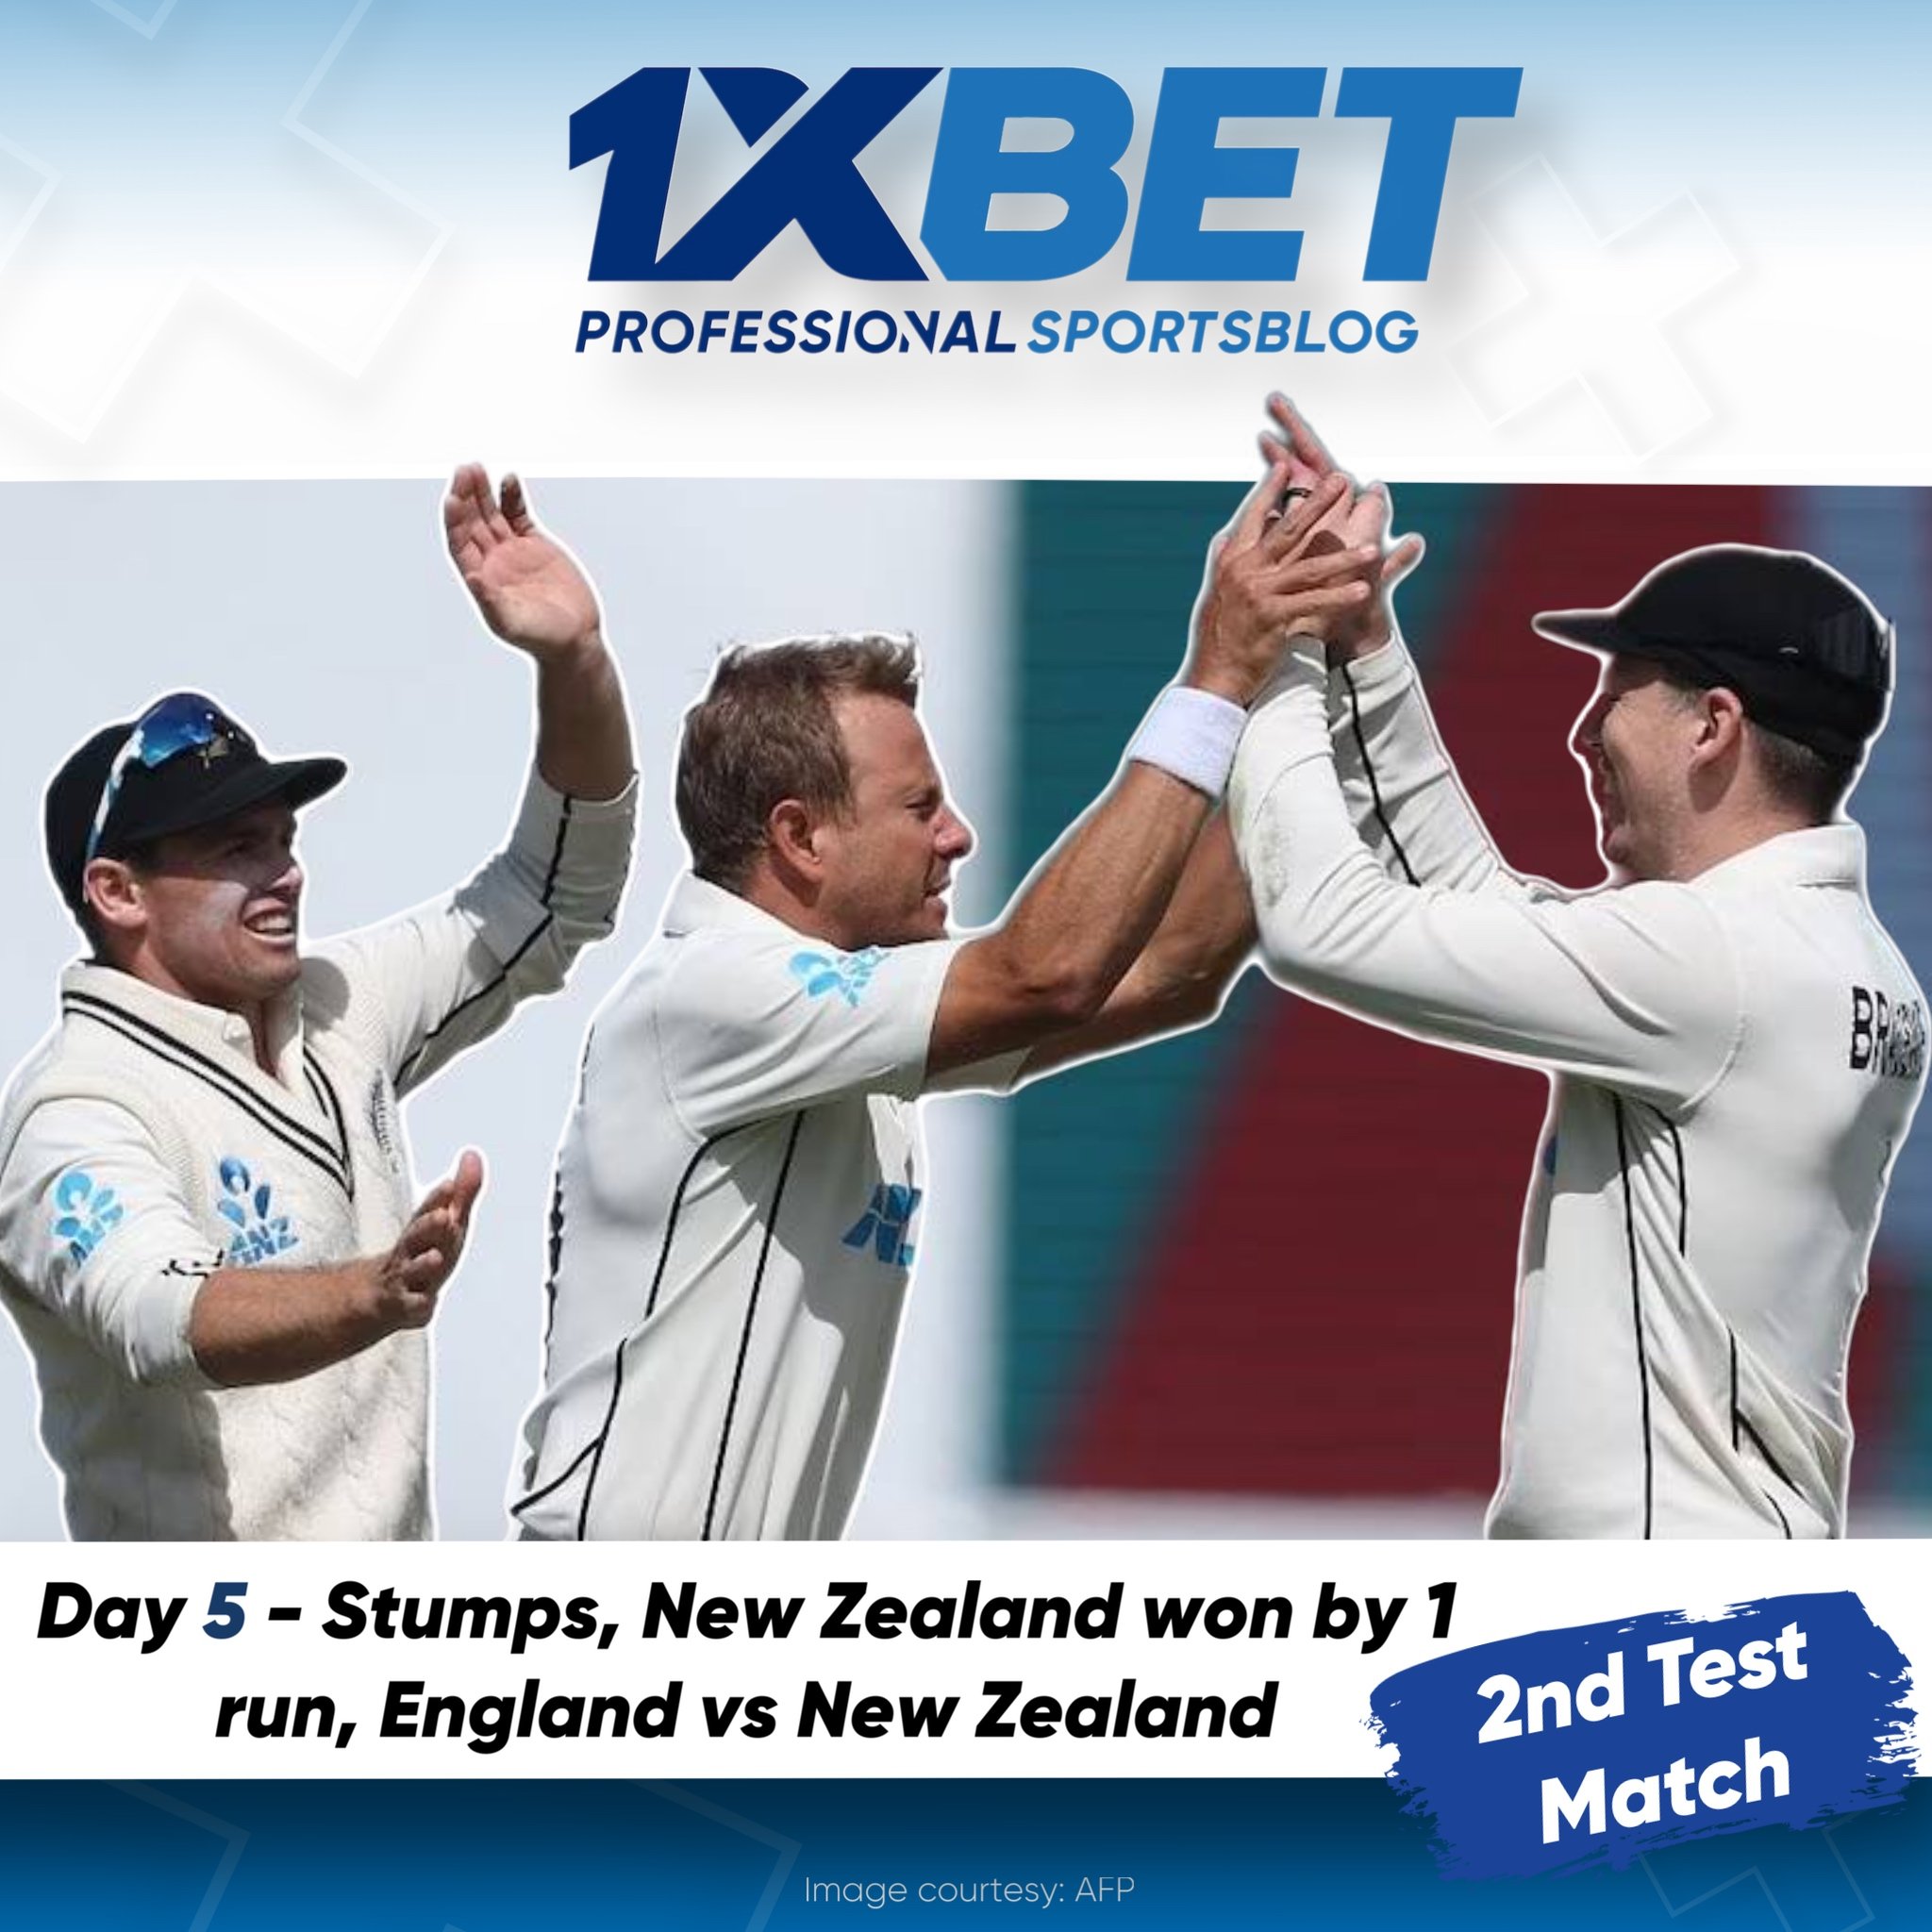 Day 5 - Stumps, New Zealand won by 1 run